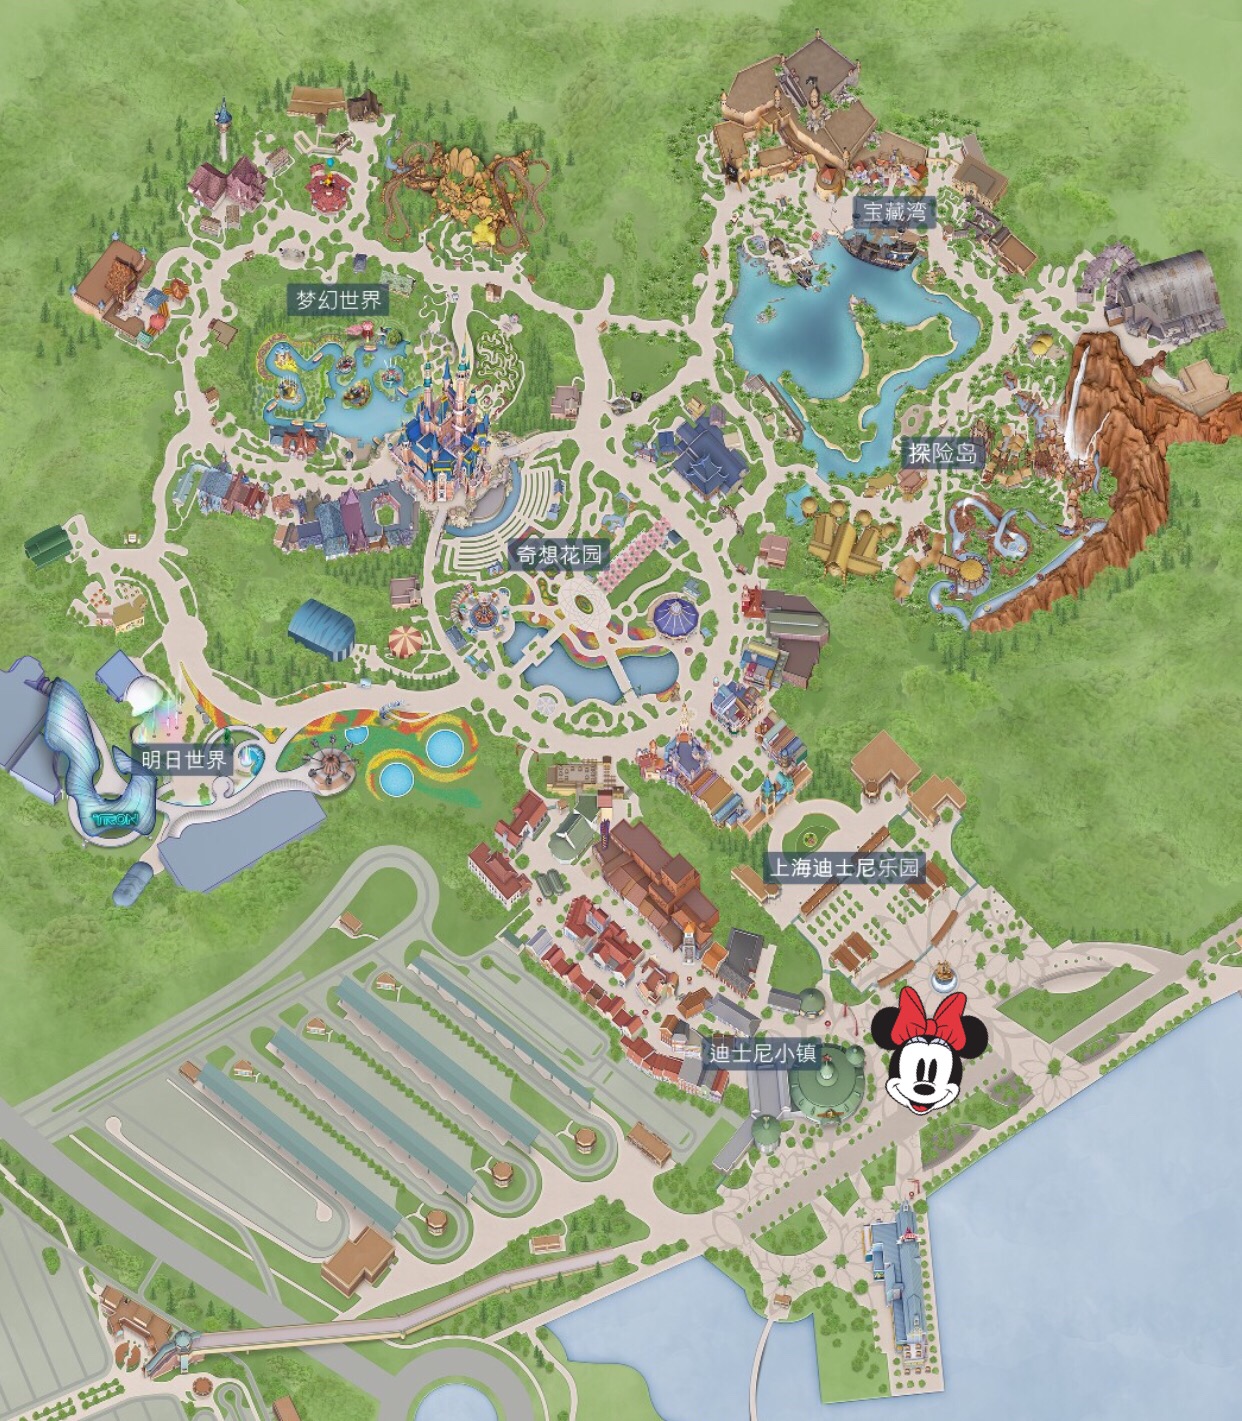 香港迪士尼乐园15周年庆典启动 奇妙梦想城堡正式开园-新旅界